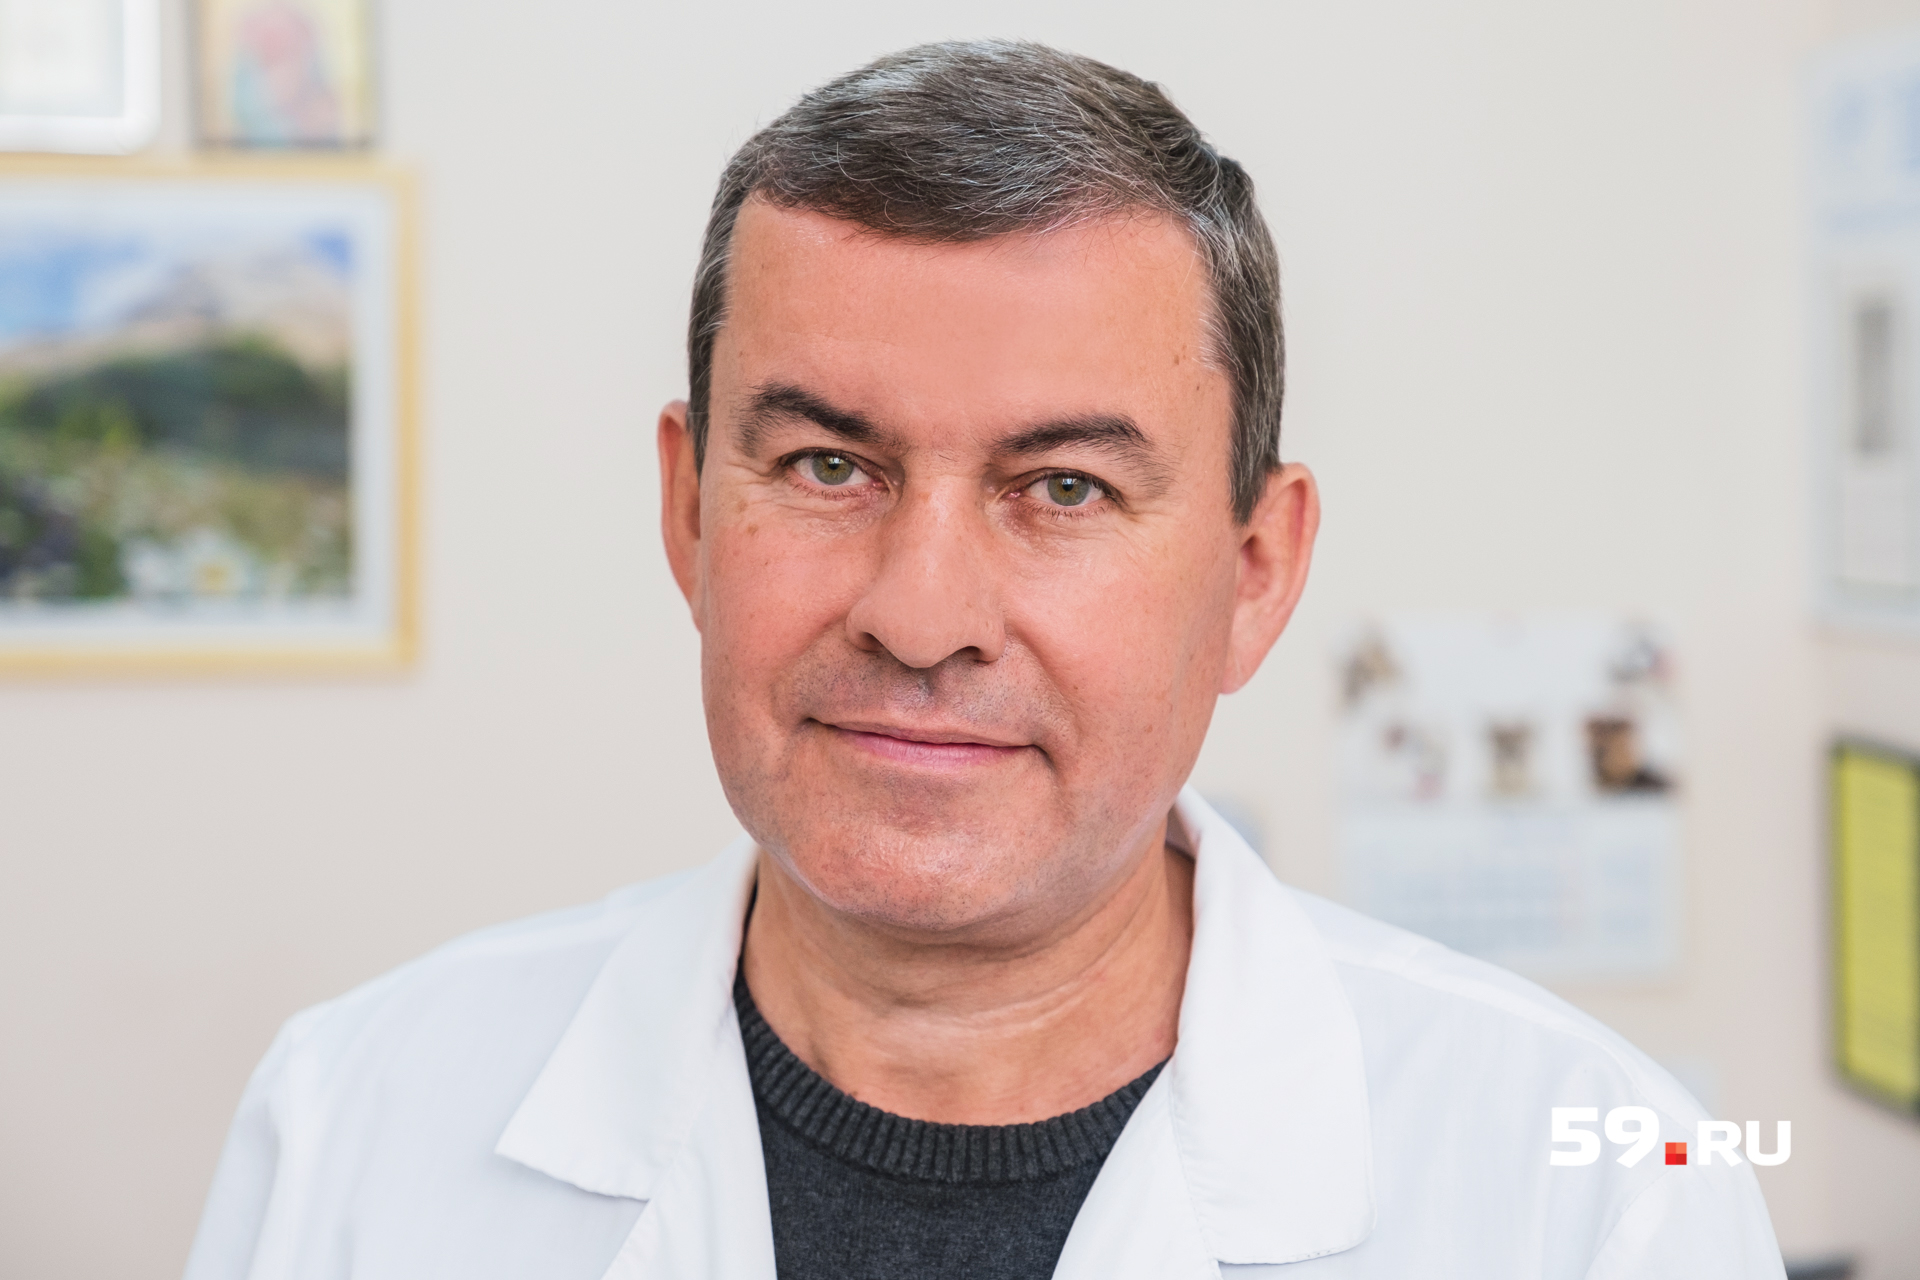 Сергей Зуев — диетолог одной из частных клиник Перми